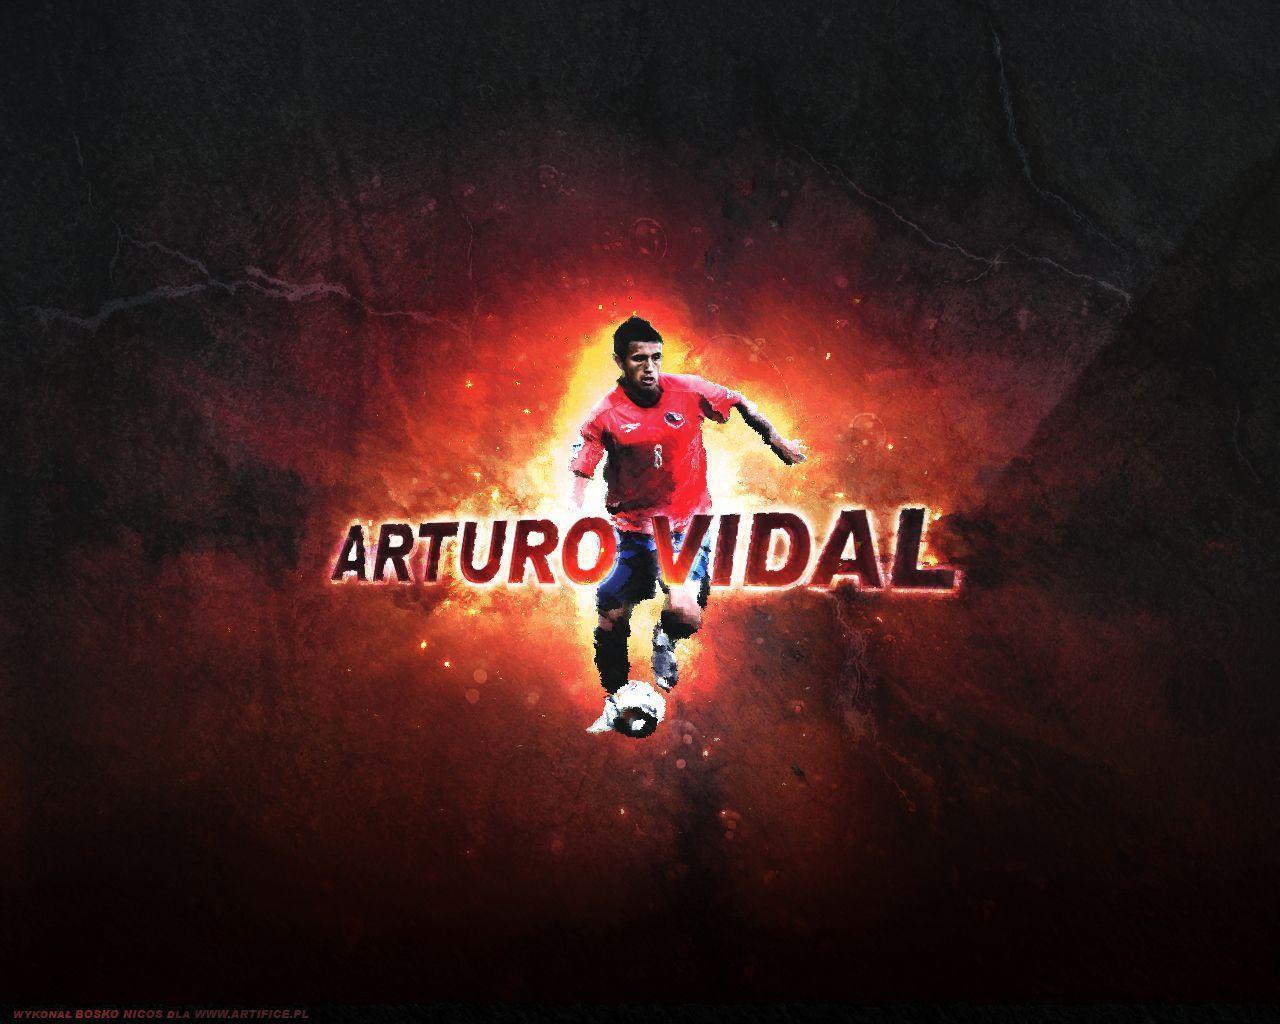 Arturo Vidal